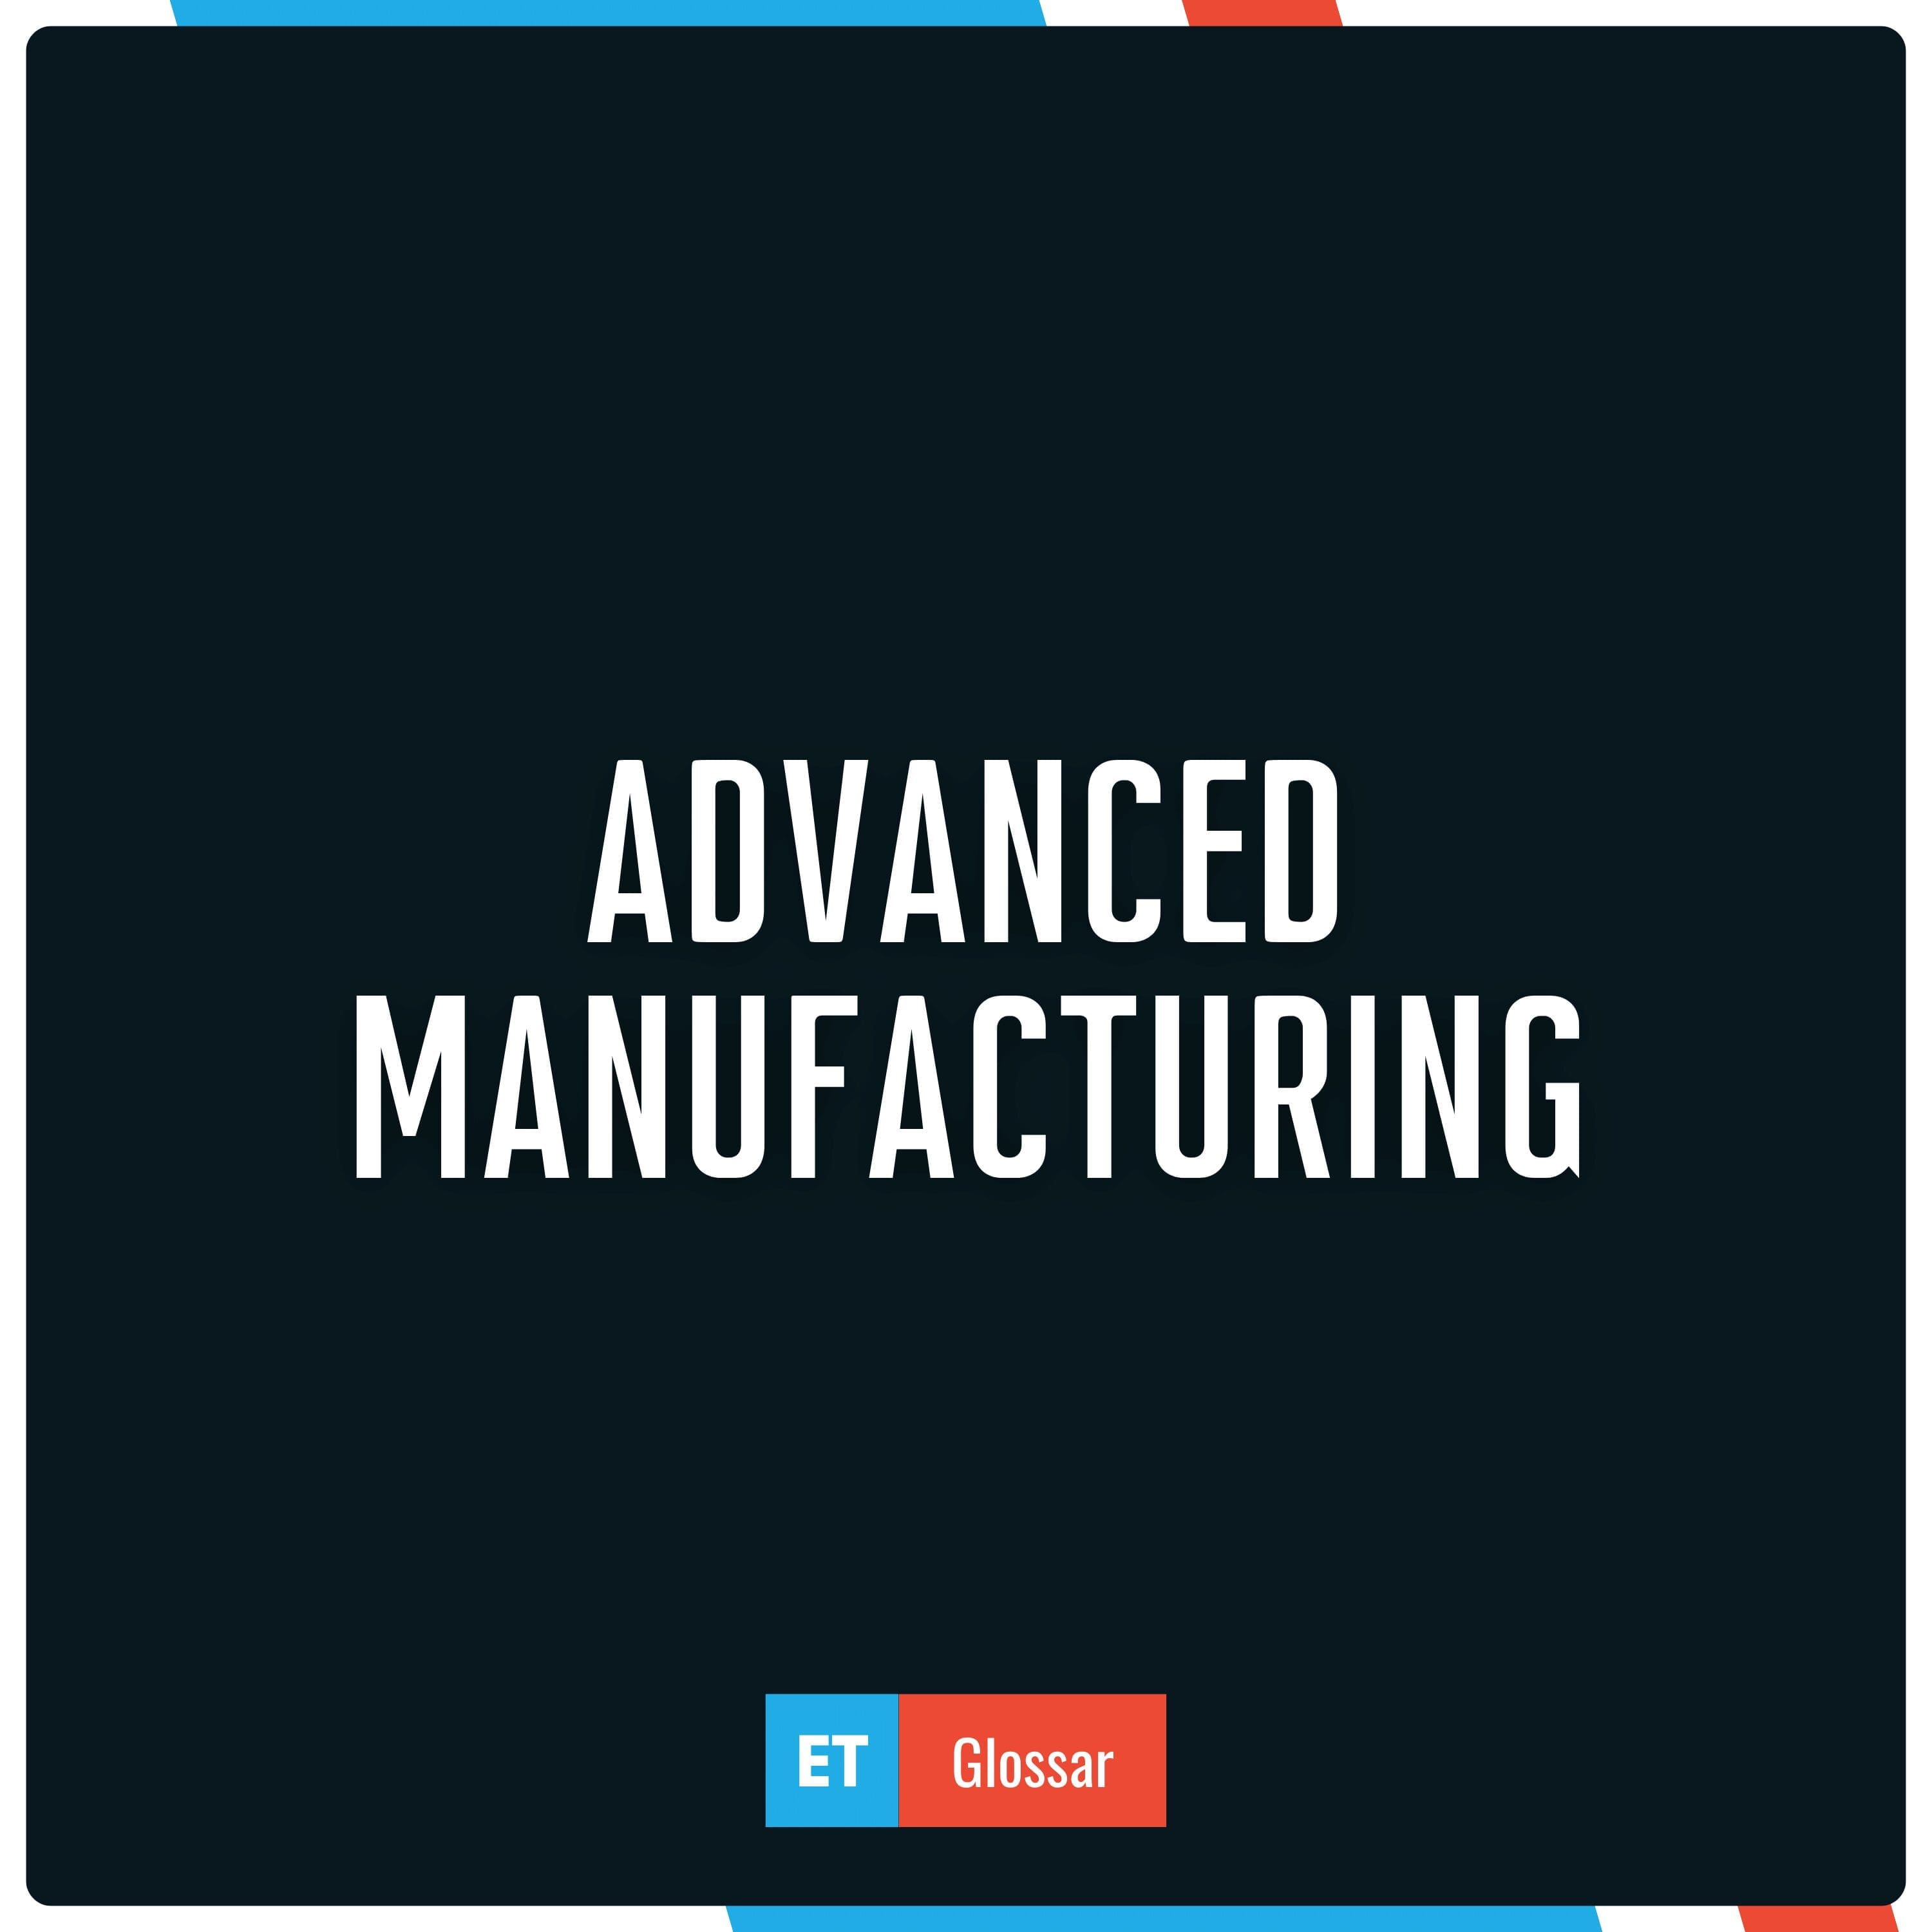 Advanced Manufacturing einfach erklärt im Exciting Tech Glossar